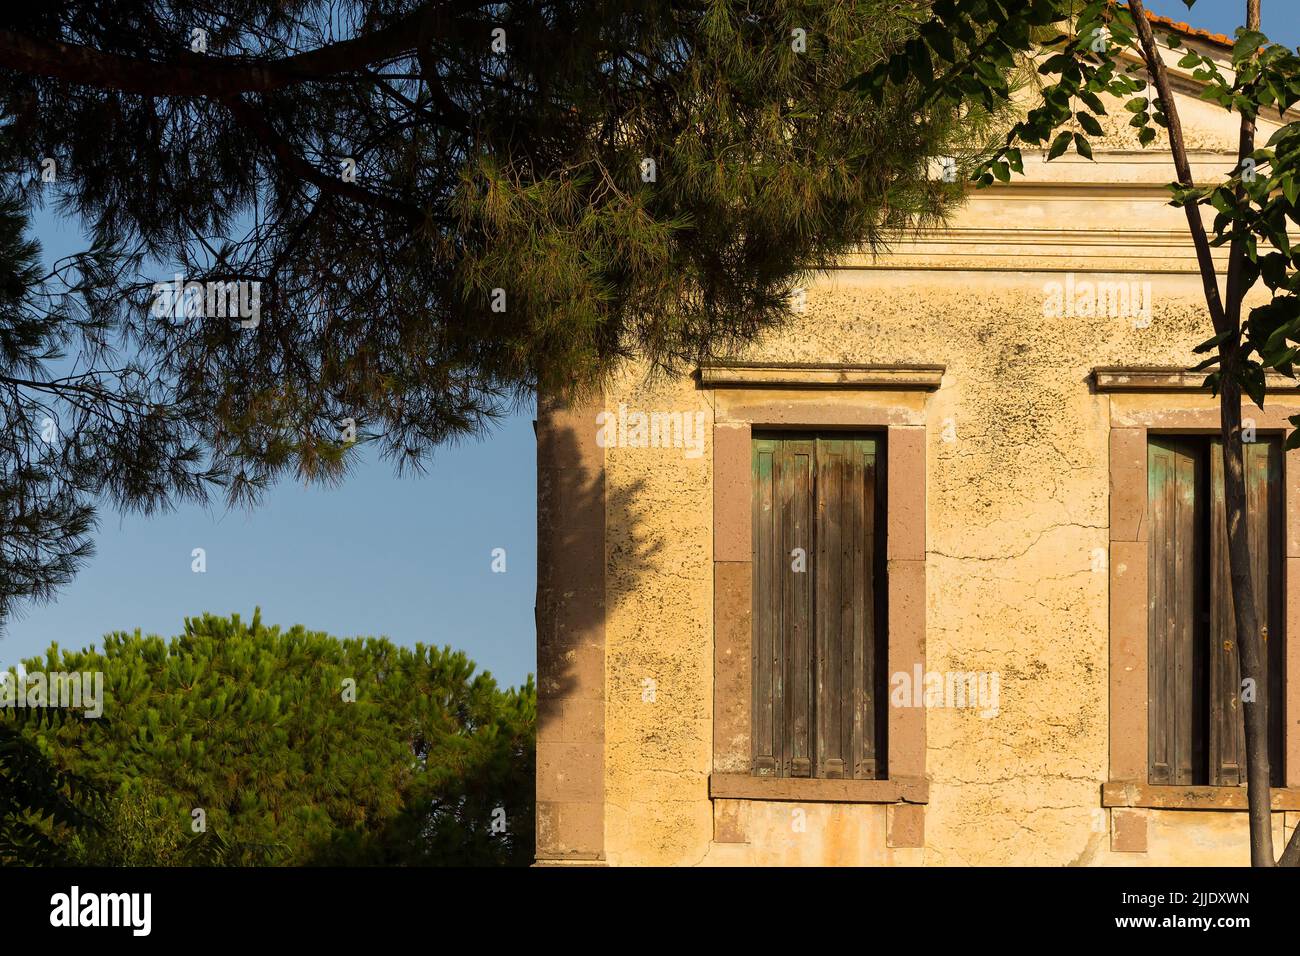 Vista di vecchia, storica, tradizionale casa in pietra che riflette il mar Egeo, stile architettonico mediterraneo catturato a Ayvalik, Turchia. È un'estate soleggiata Foto Stock